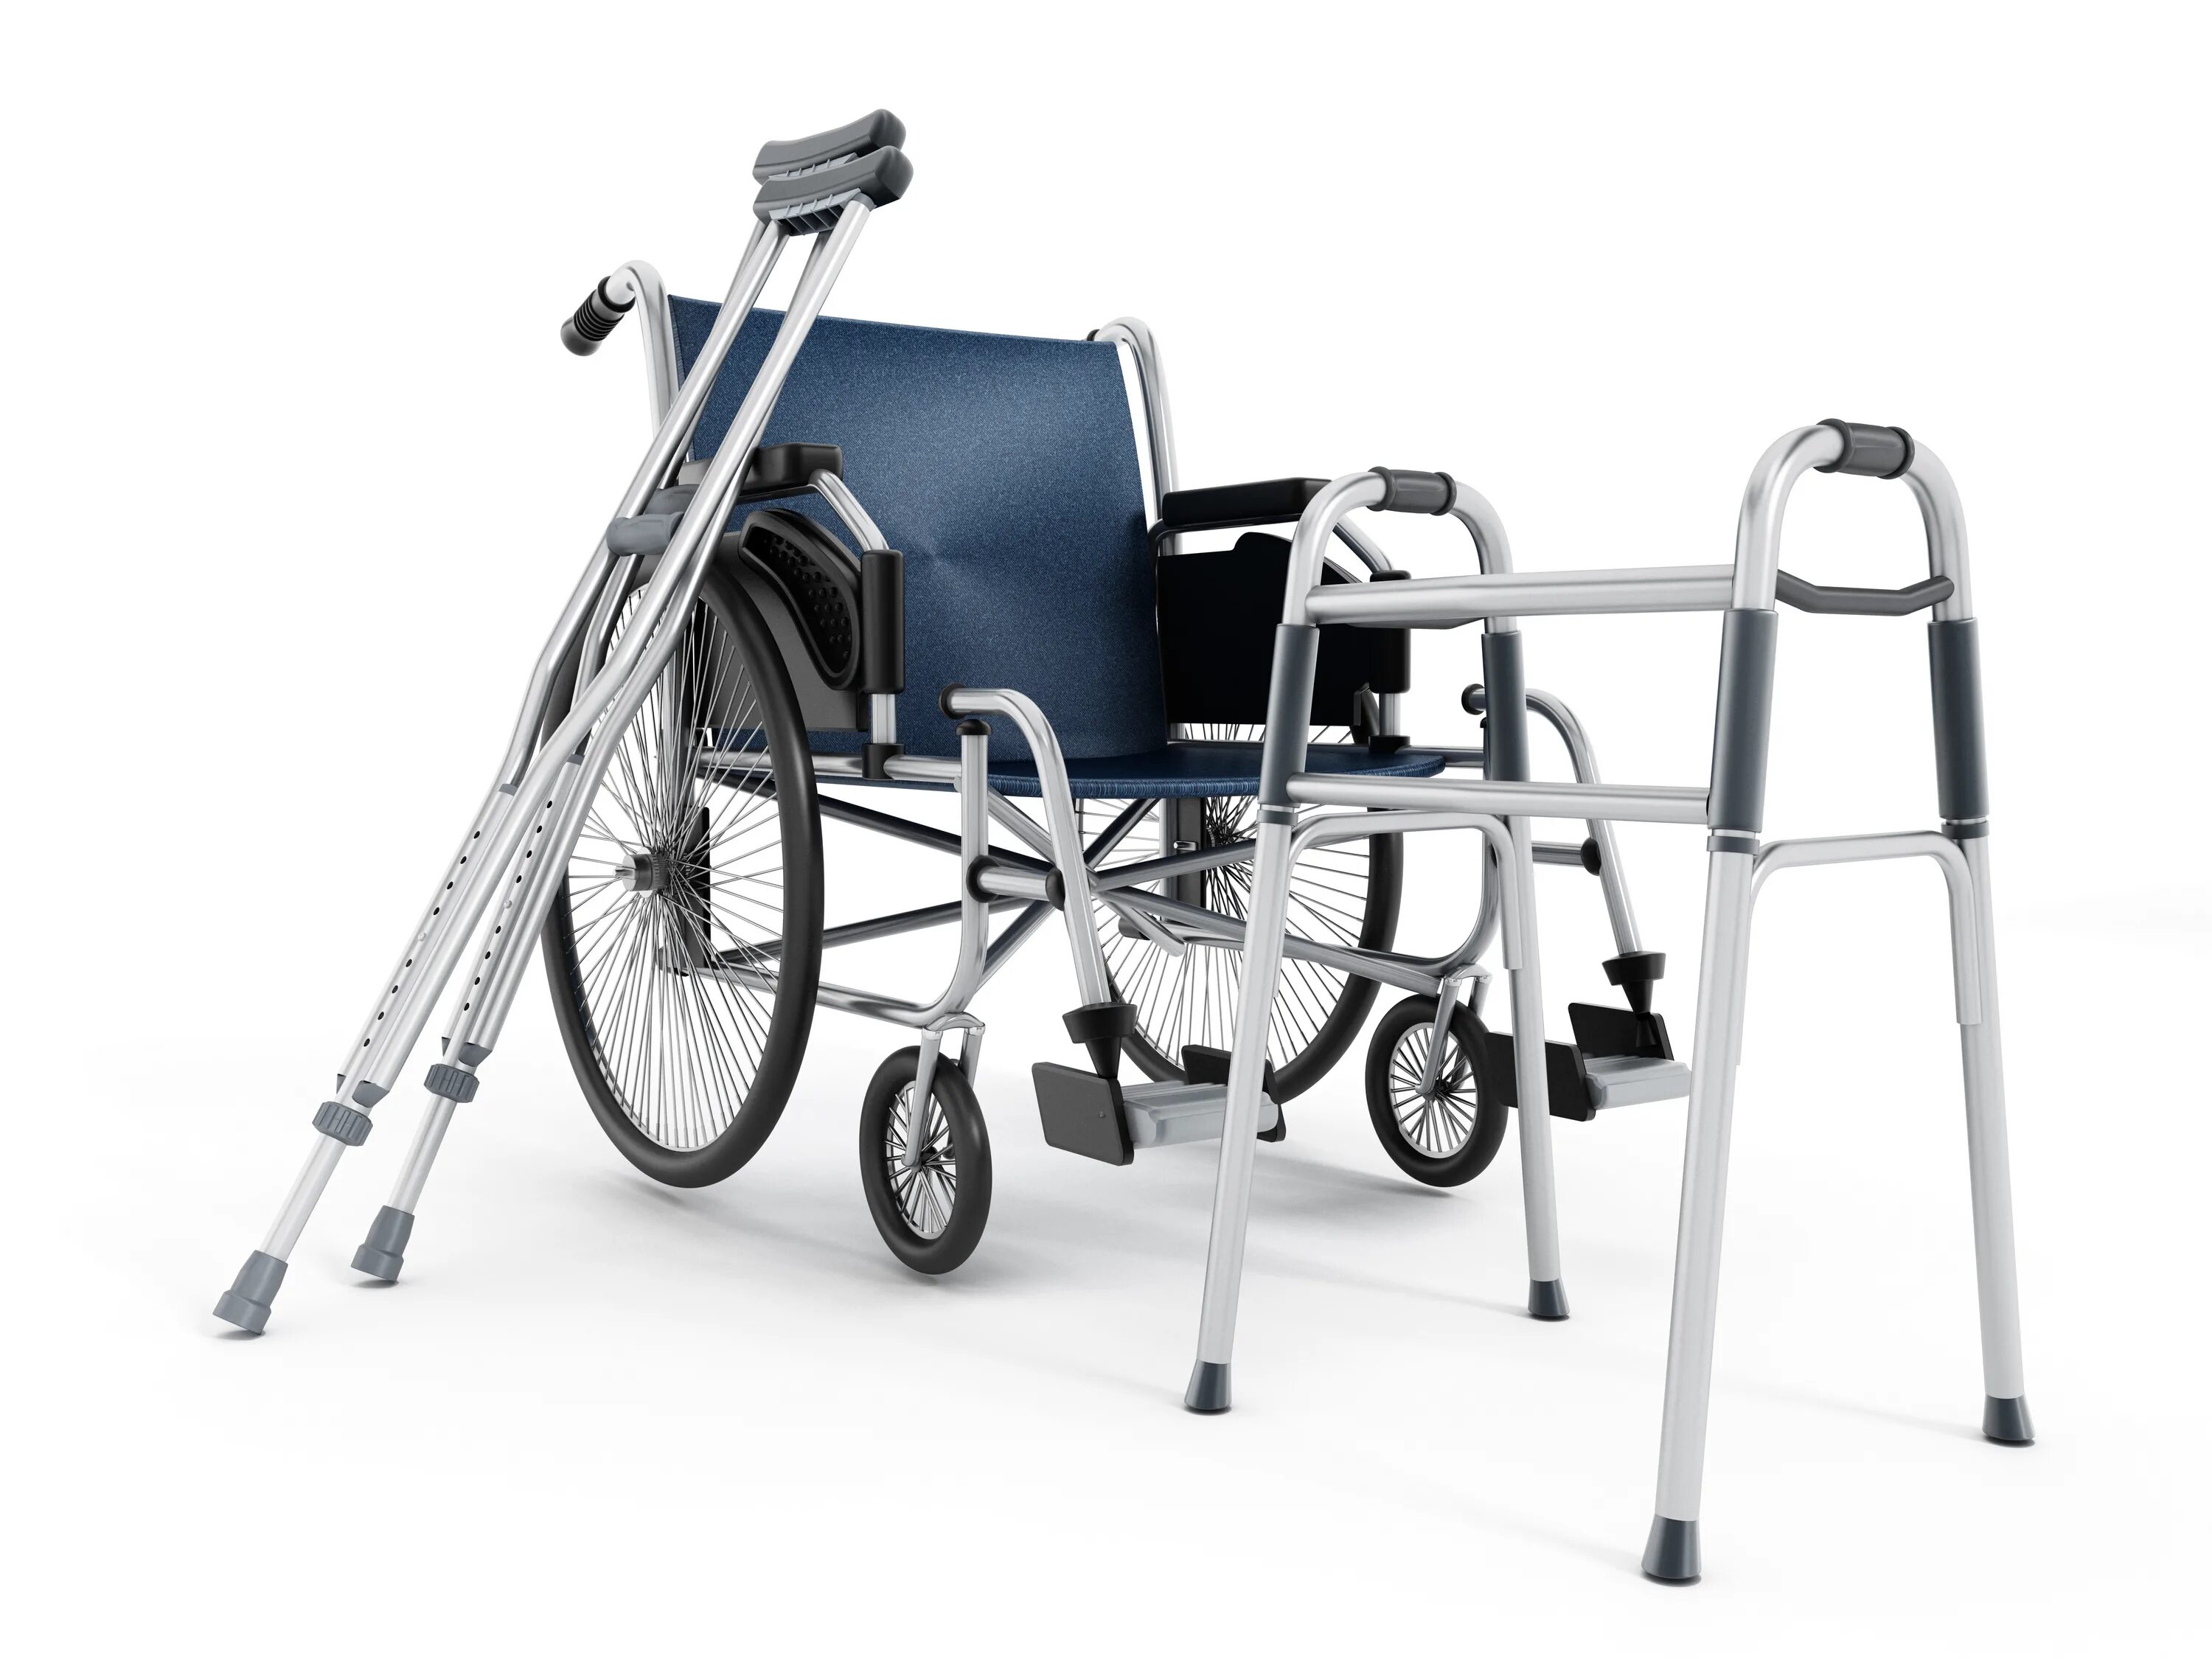 ТСР средства реабилитации. Электронный сертификат на ТСР для инвалидов 2021. Техсредства для реабилитации инвалидов. Классификатор ТСР для инвалидов 2022. Какие технические средства реабилитации могут быть применены